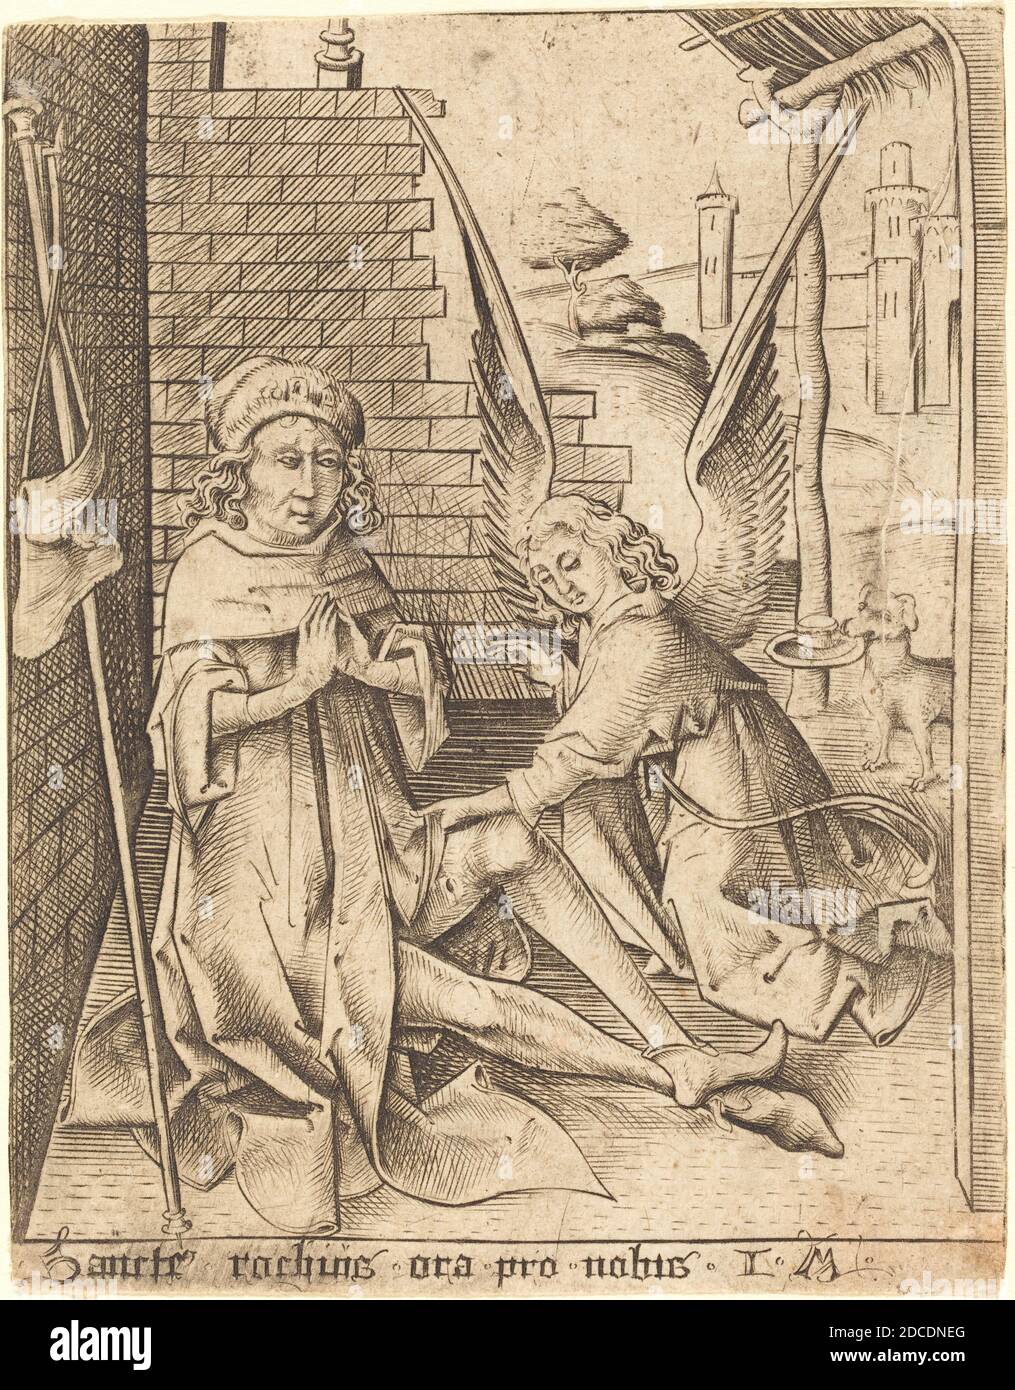 Israhel van Meckenem, (artist), German, c. 1445 - 1503, Saint Roch, c. 1490/1500, engraving Stock Photo